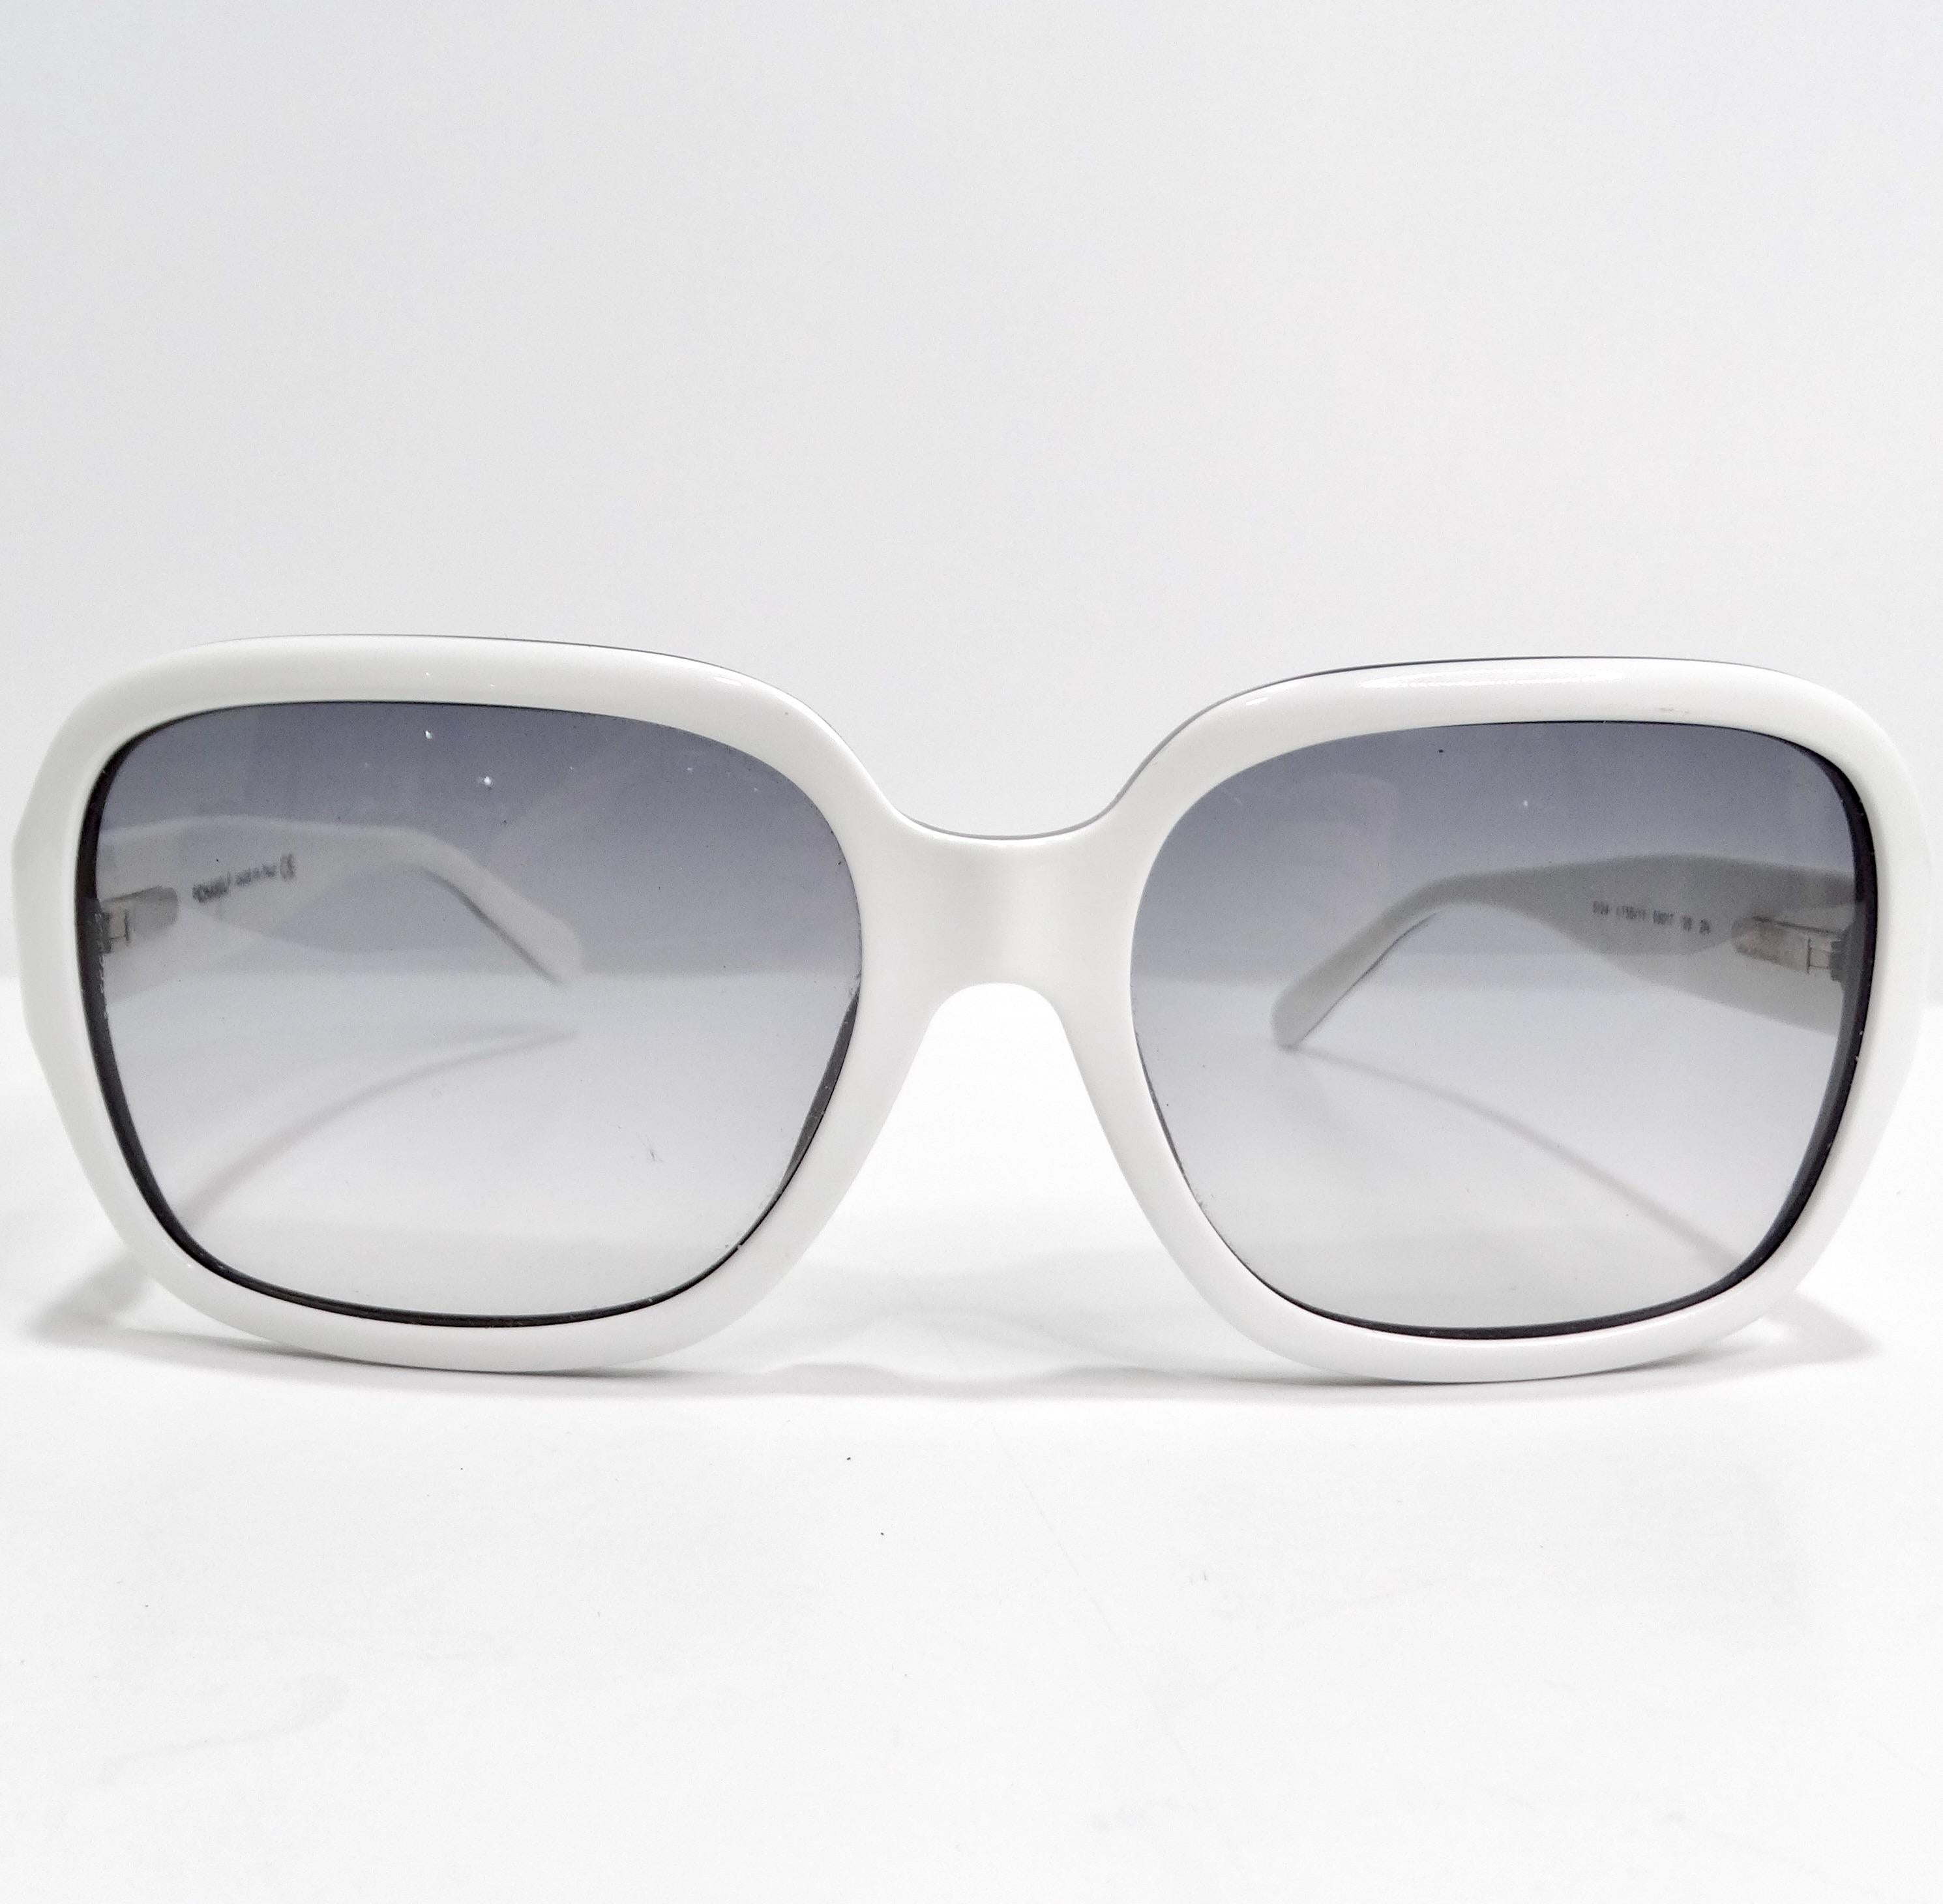 Die Chanel Acetate Quilted CC Sunglasses ist eine atemberaubende Ergänzung Ihrer Brillensammlung. Diese raffinierte Brille zeichnet sich durch einen markanten weiß-schwarzen Rahmen mit großen quadratischen Rändern und grau getönten Gläsern aus und